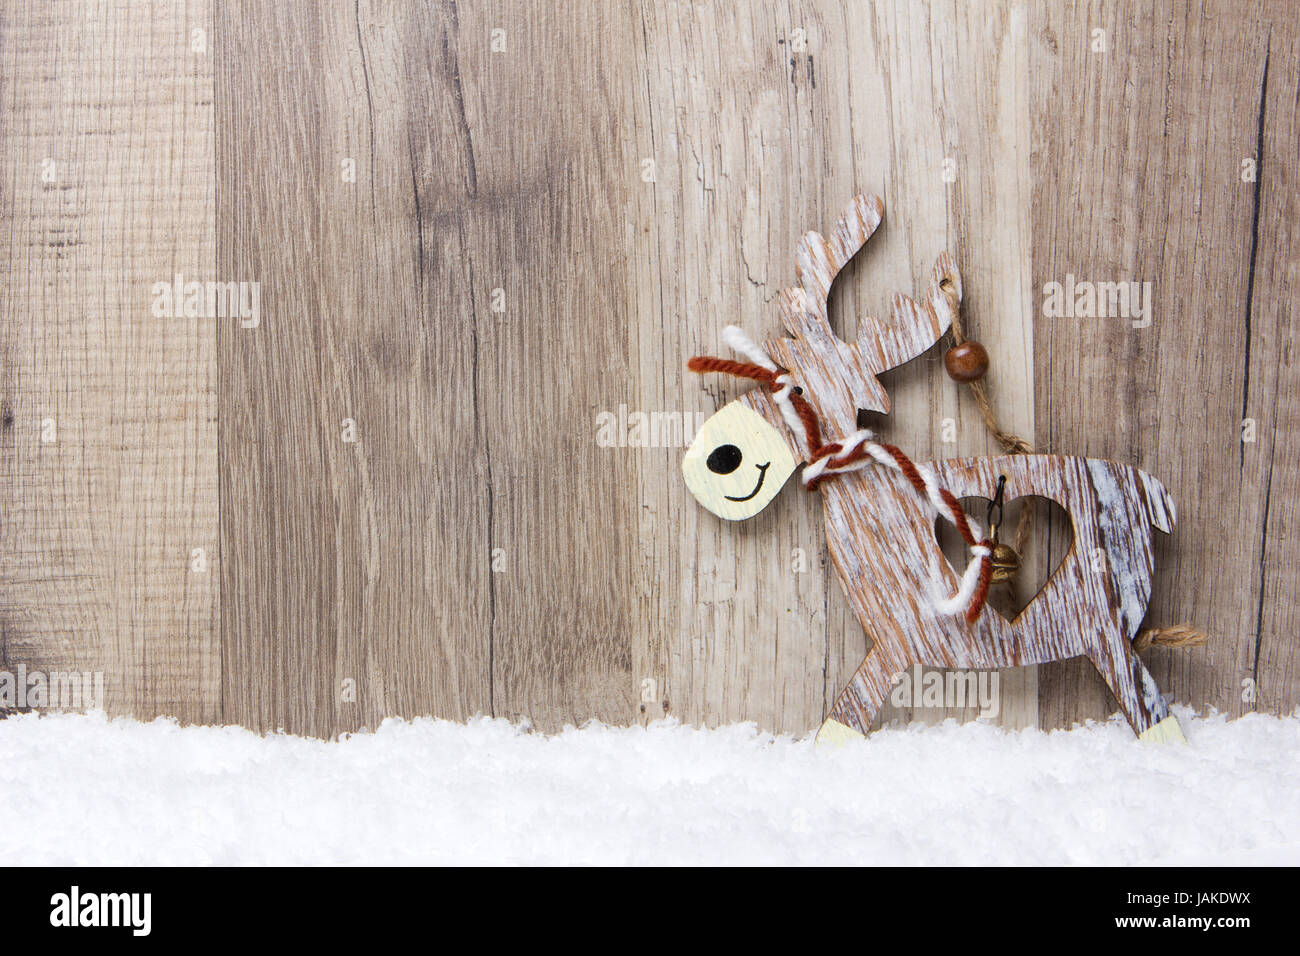 Weihnachten, Dekoration, Holzhintergrund mit Schnee, Elch Banque D'Images